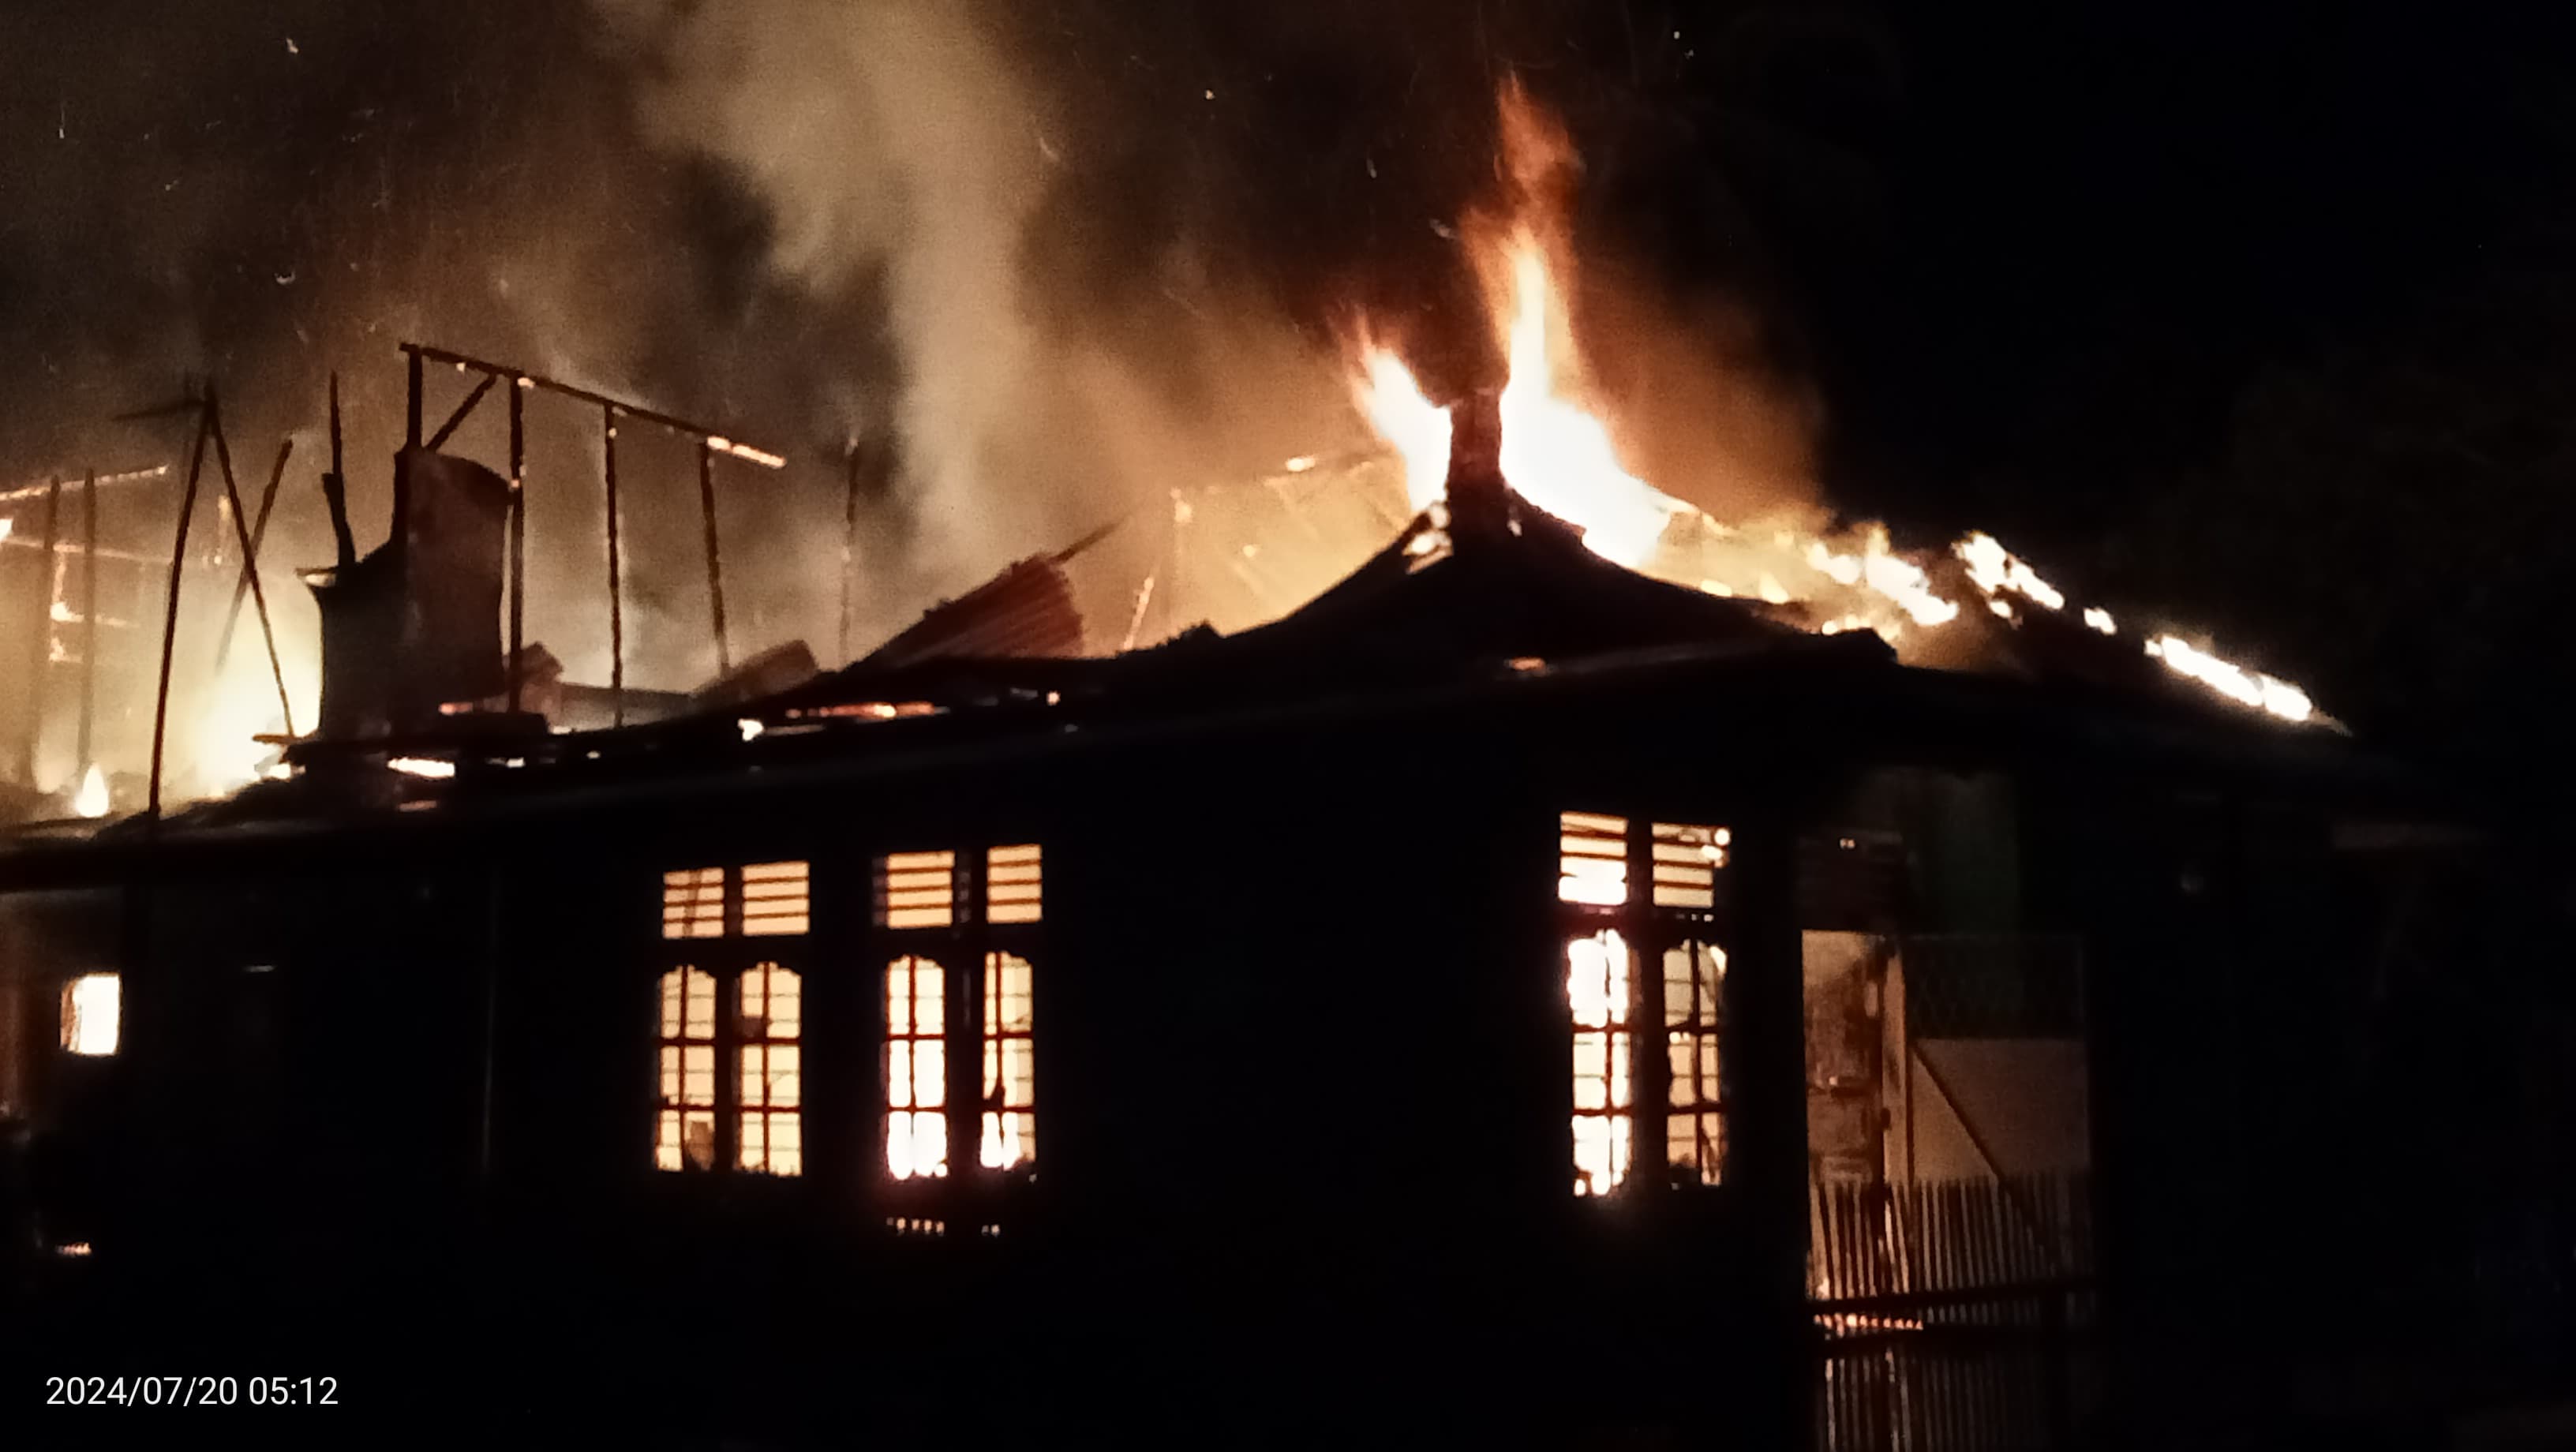 Rumah di Tanjung Agung Ludes Terbakar, Diduga Karena Korsleting Listrik